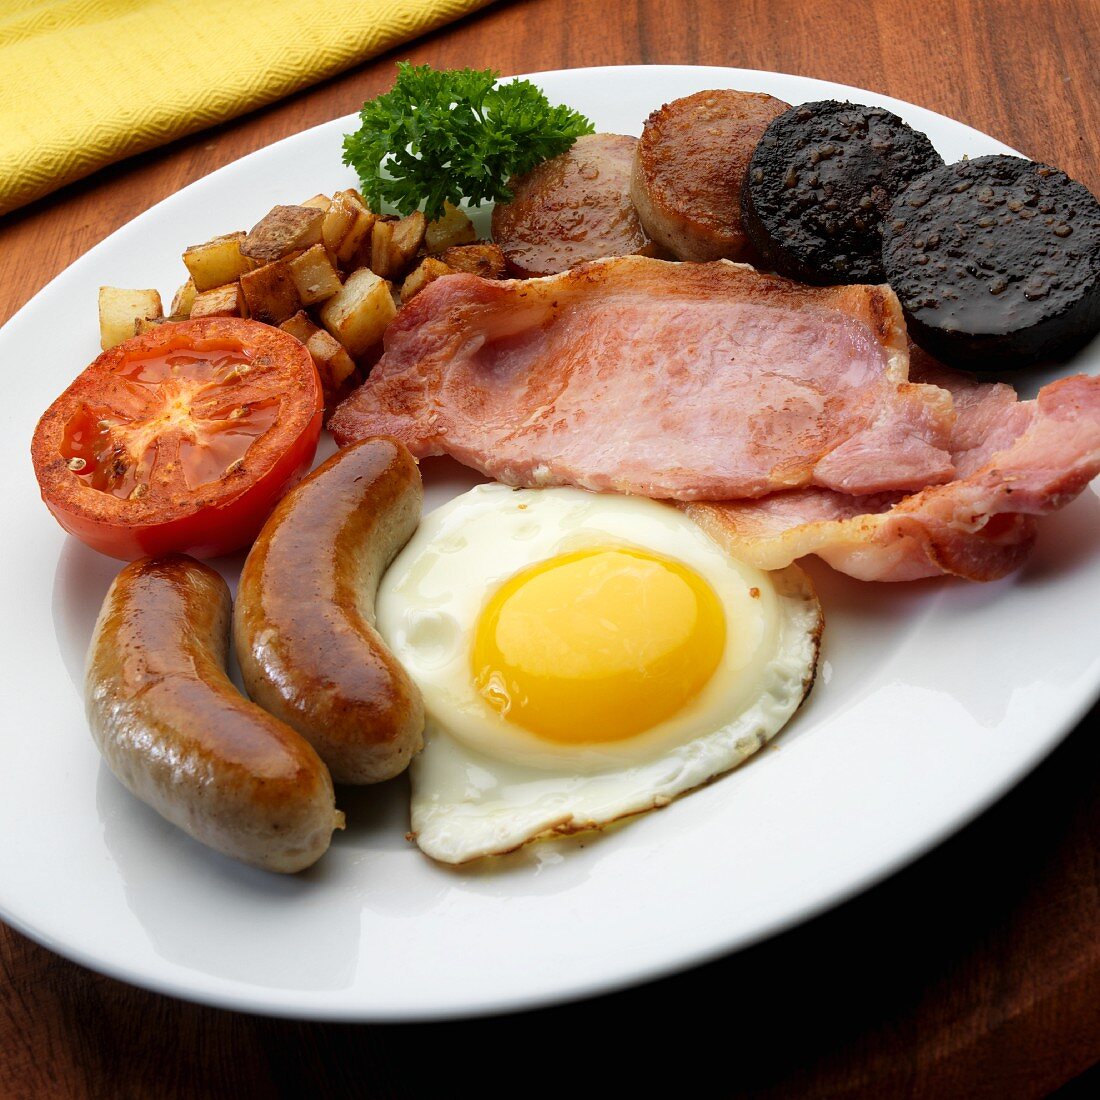 Full English, Irish breakfast with egg, bacon, bangers, black pudding, white pudding fried potatoes, tomato